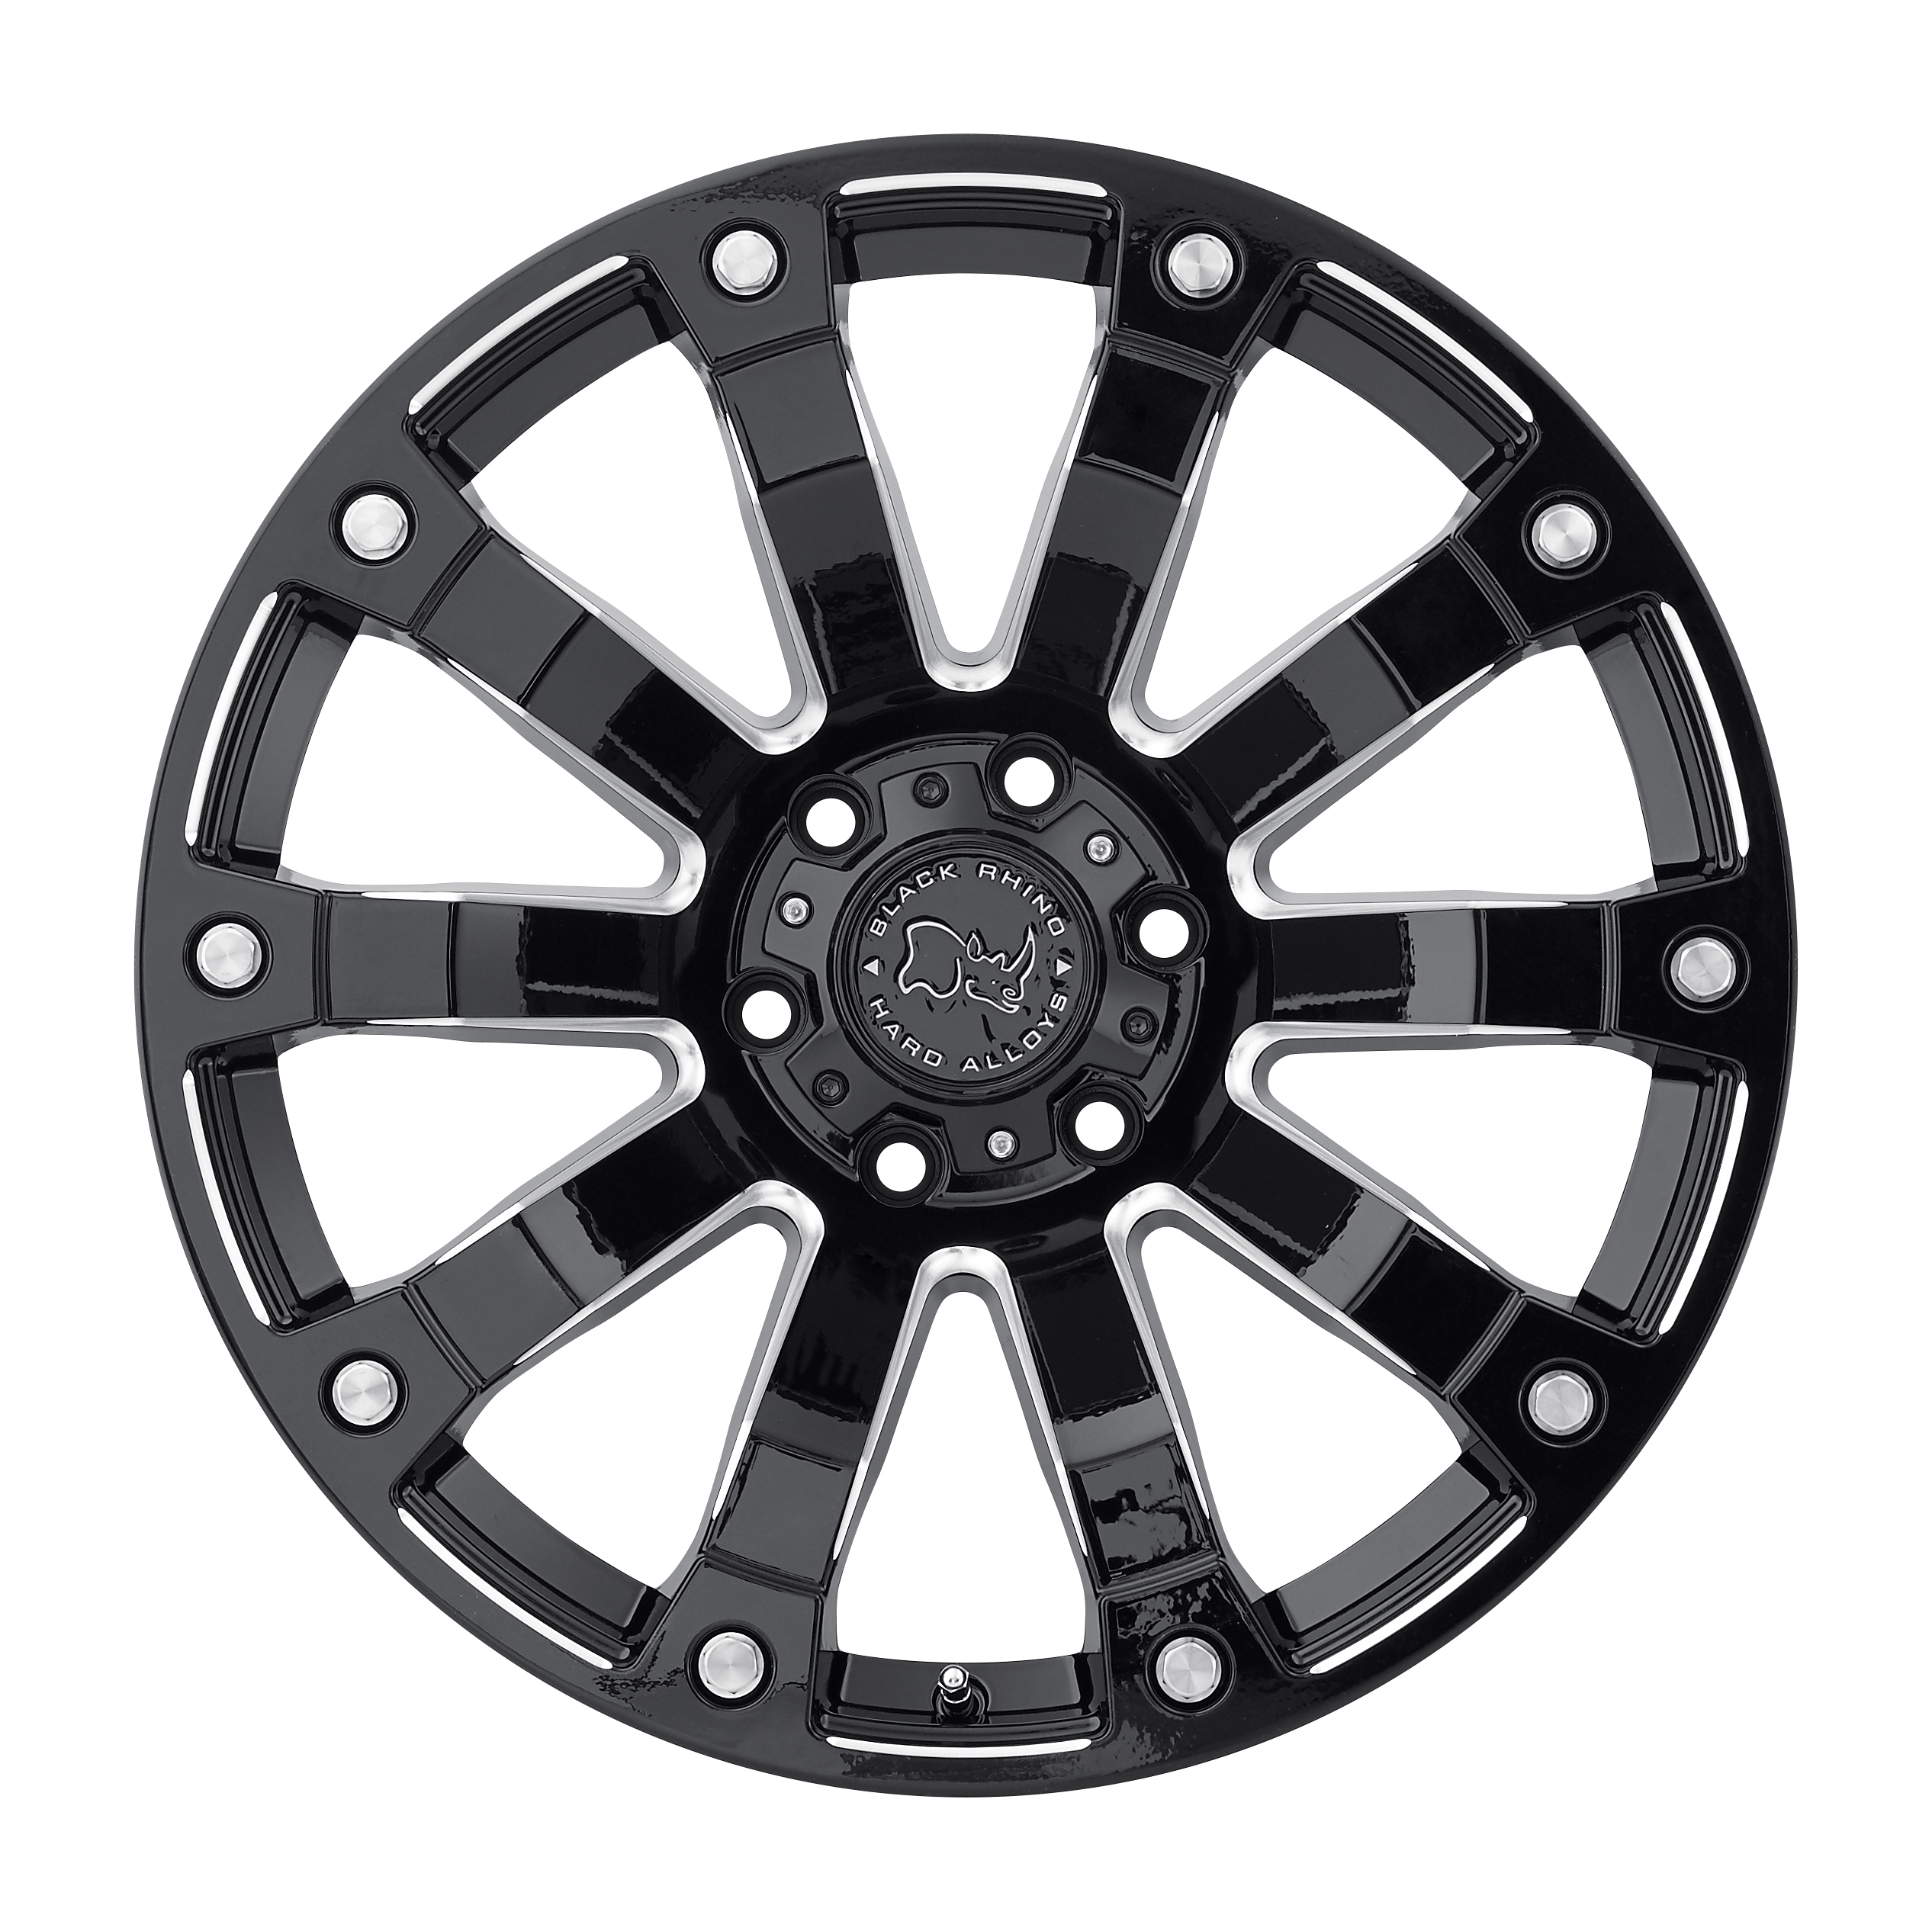 Black Rhino Wheels- Selkirk wheels in Gloss Black with Milled Spokes